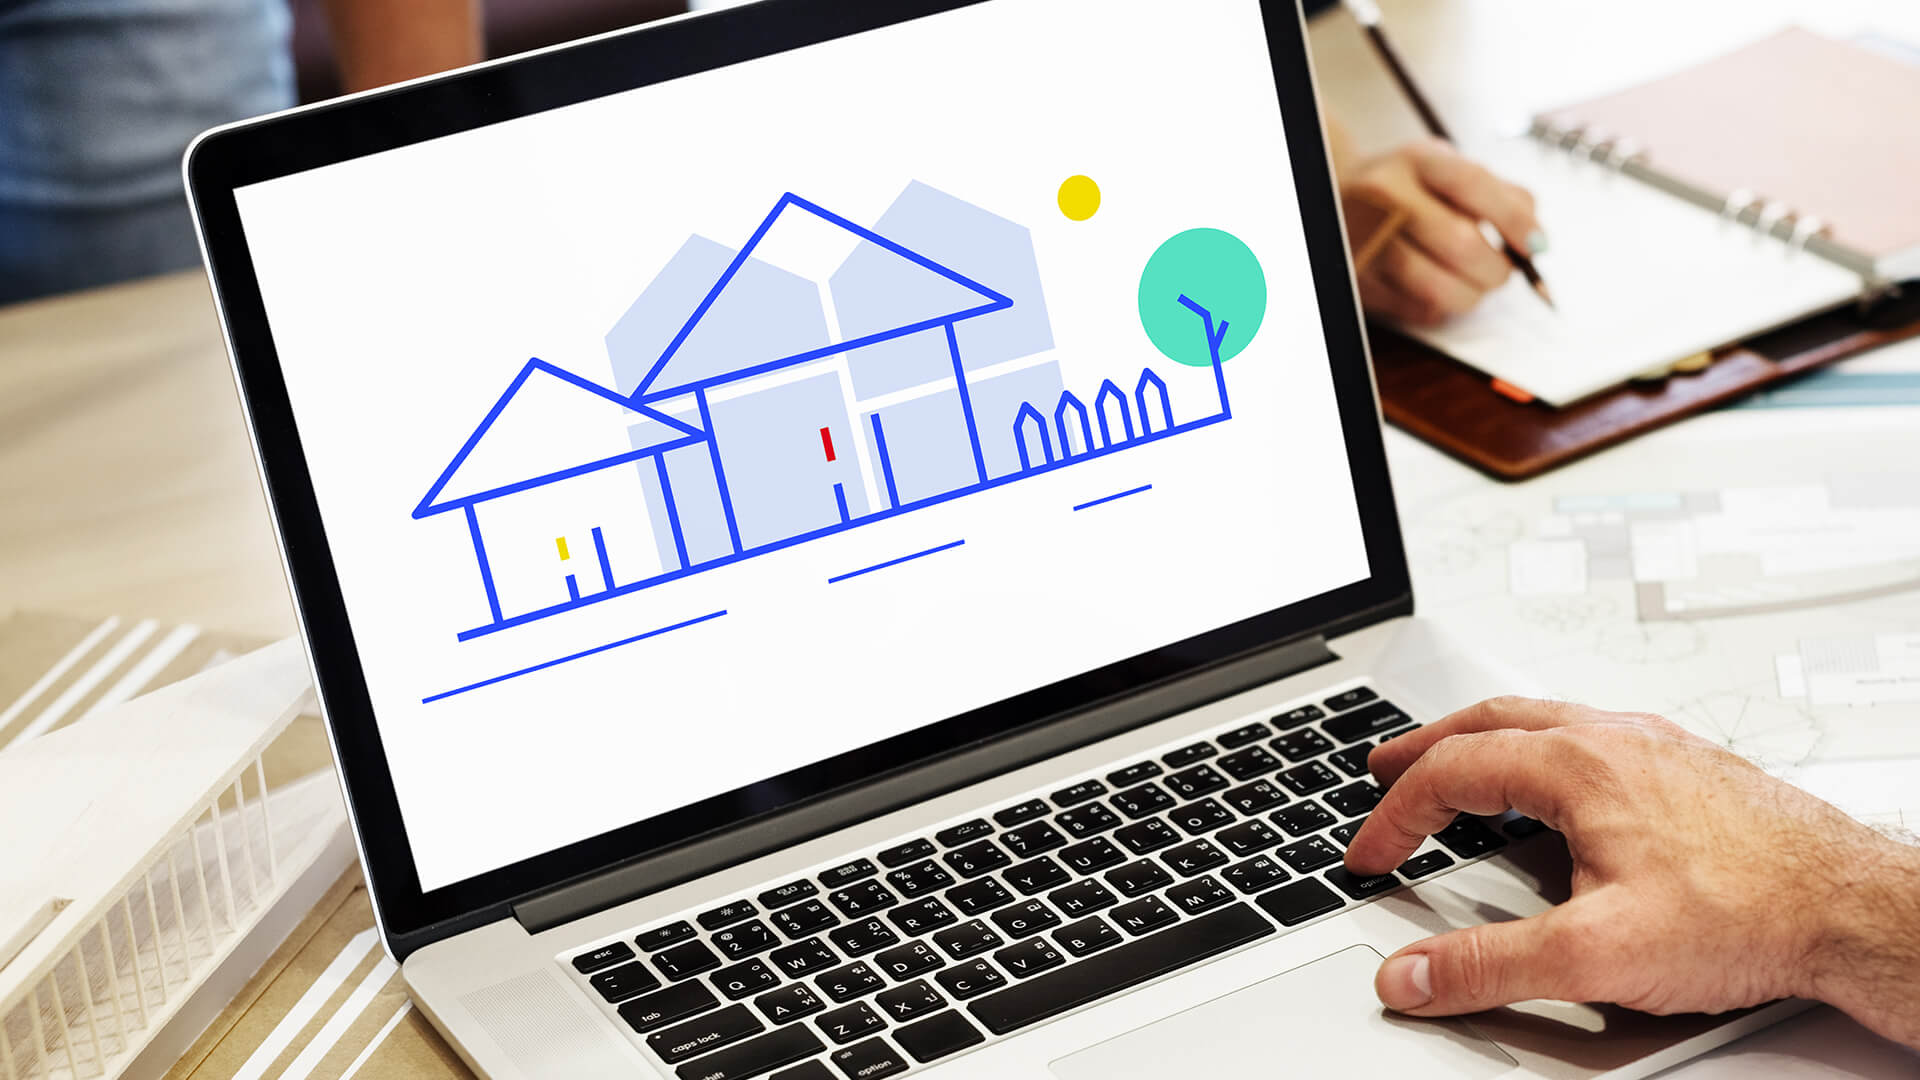 Comment Htag Digital a boosté les conversions immobilières via Google Ads en 3 ans ?